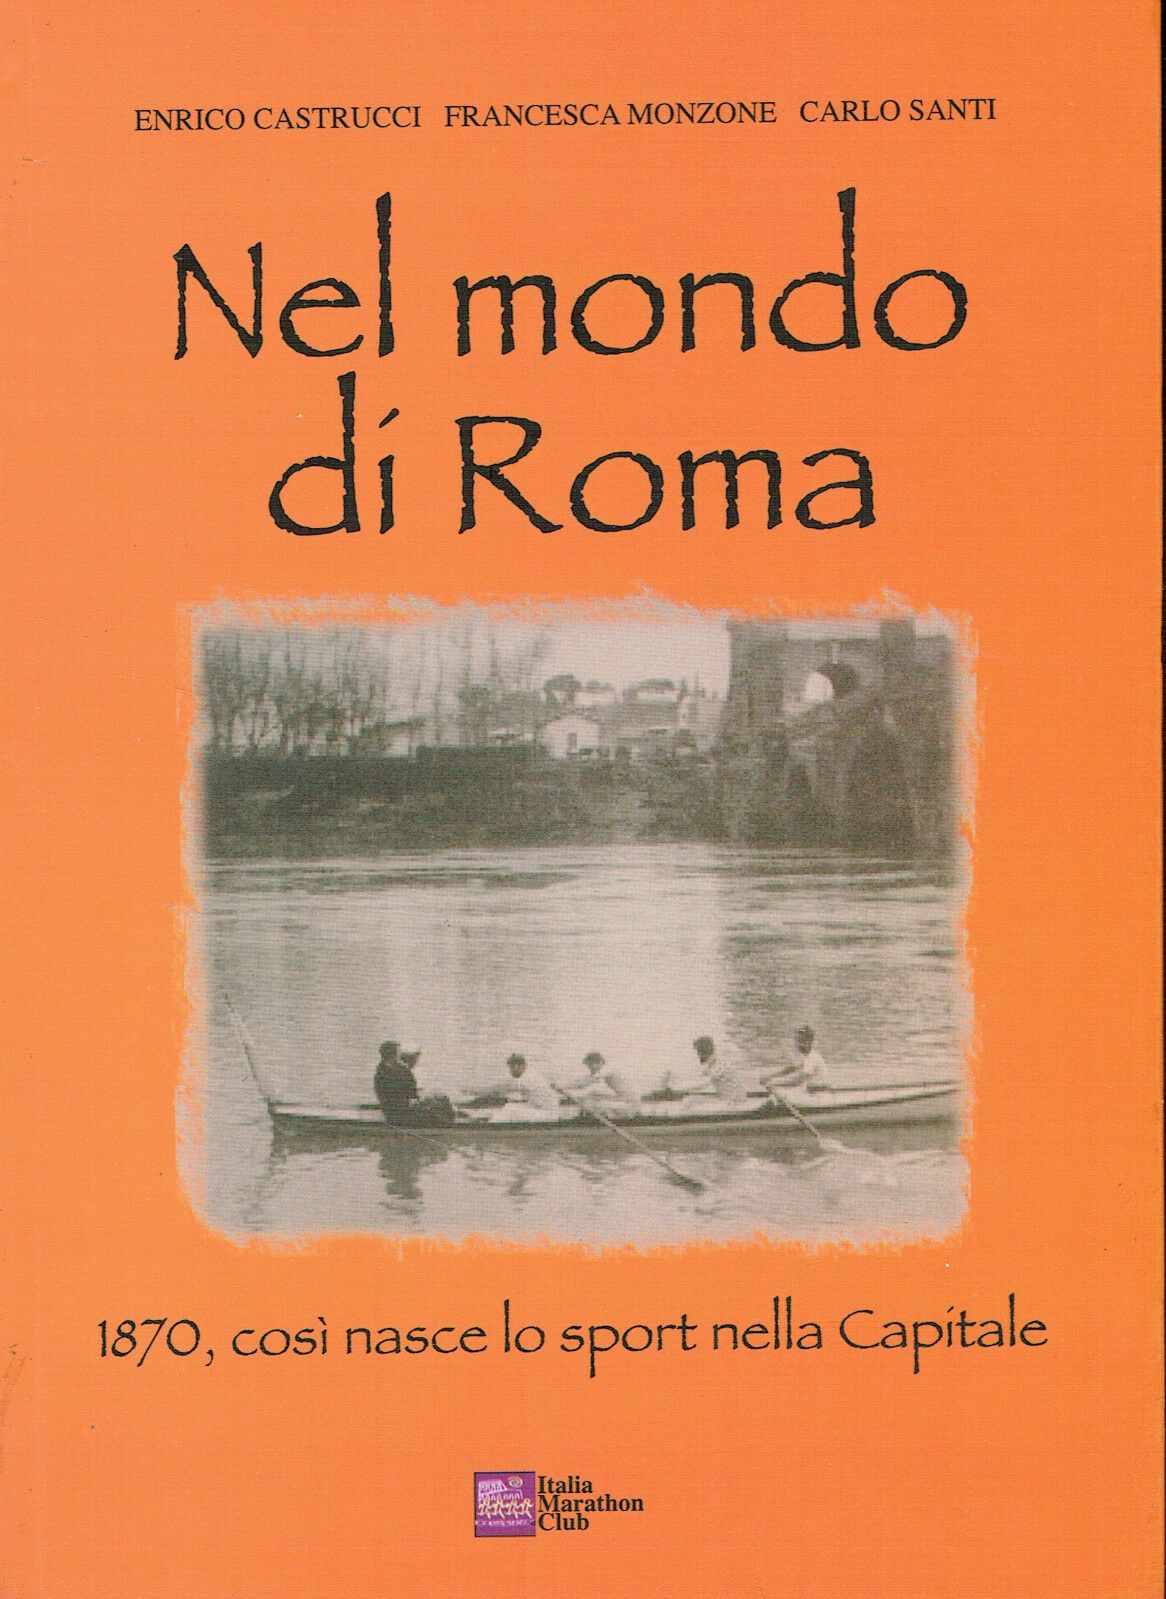 “Nel mondo di Roma: 1870 così nasce lo sport” in bancarella